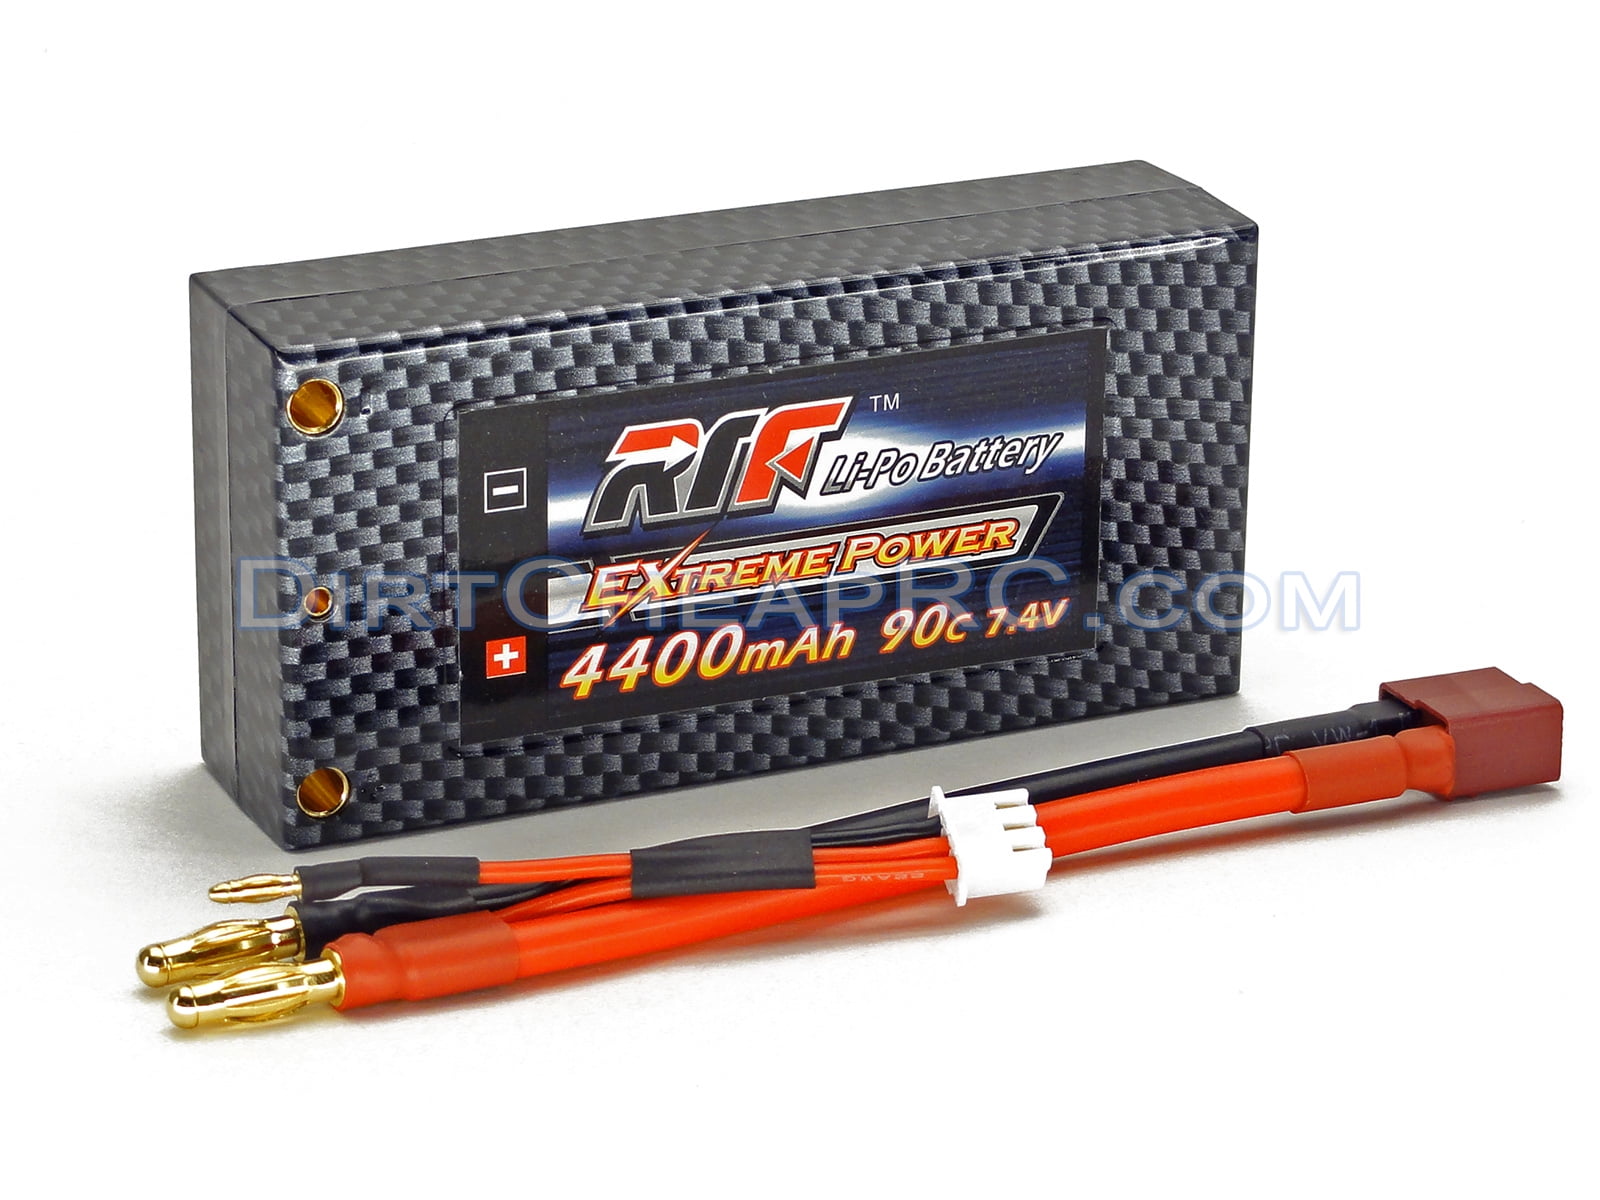 7.4V 4400mAh 2S Cell 90C Shorty HardCase LiPo Battery Pack w/ 4mm ...